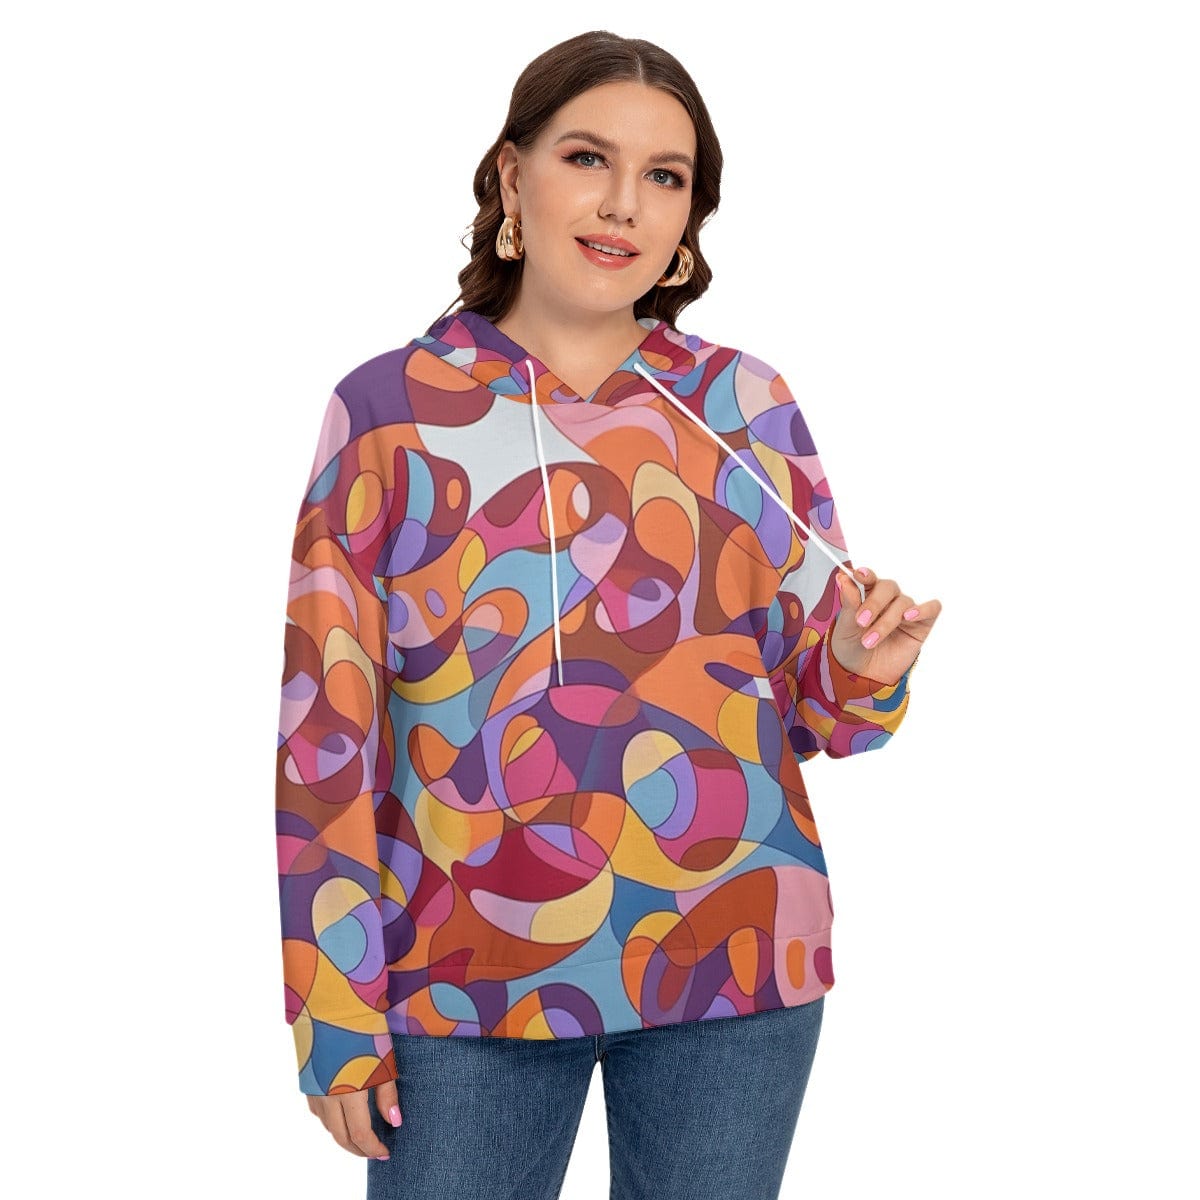 Yoycol All-Over Print Women's Long Sleeve Sweatshirt With Hood(Plus Size)